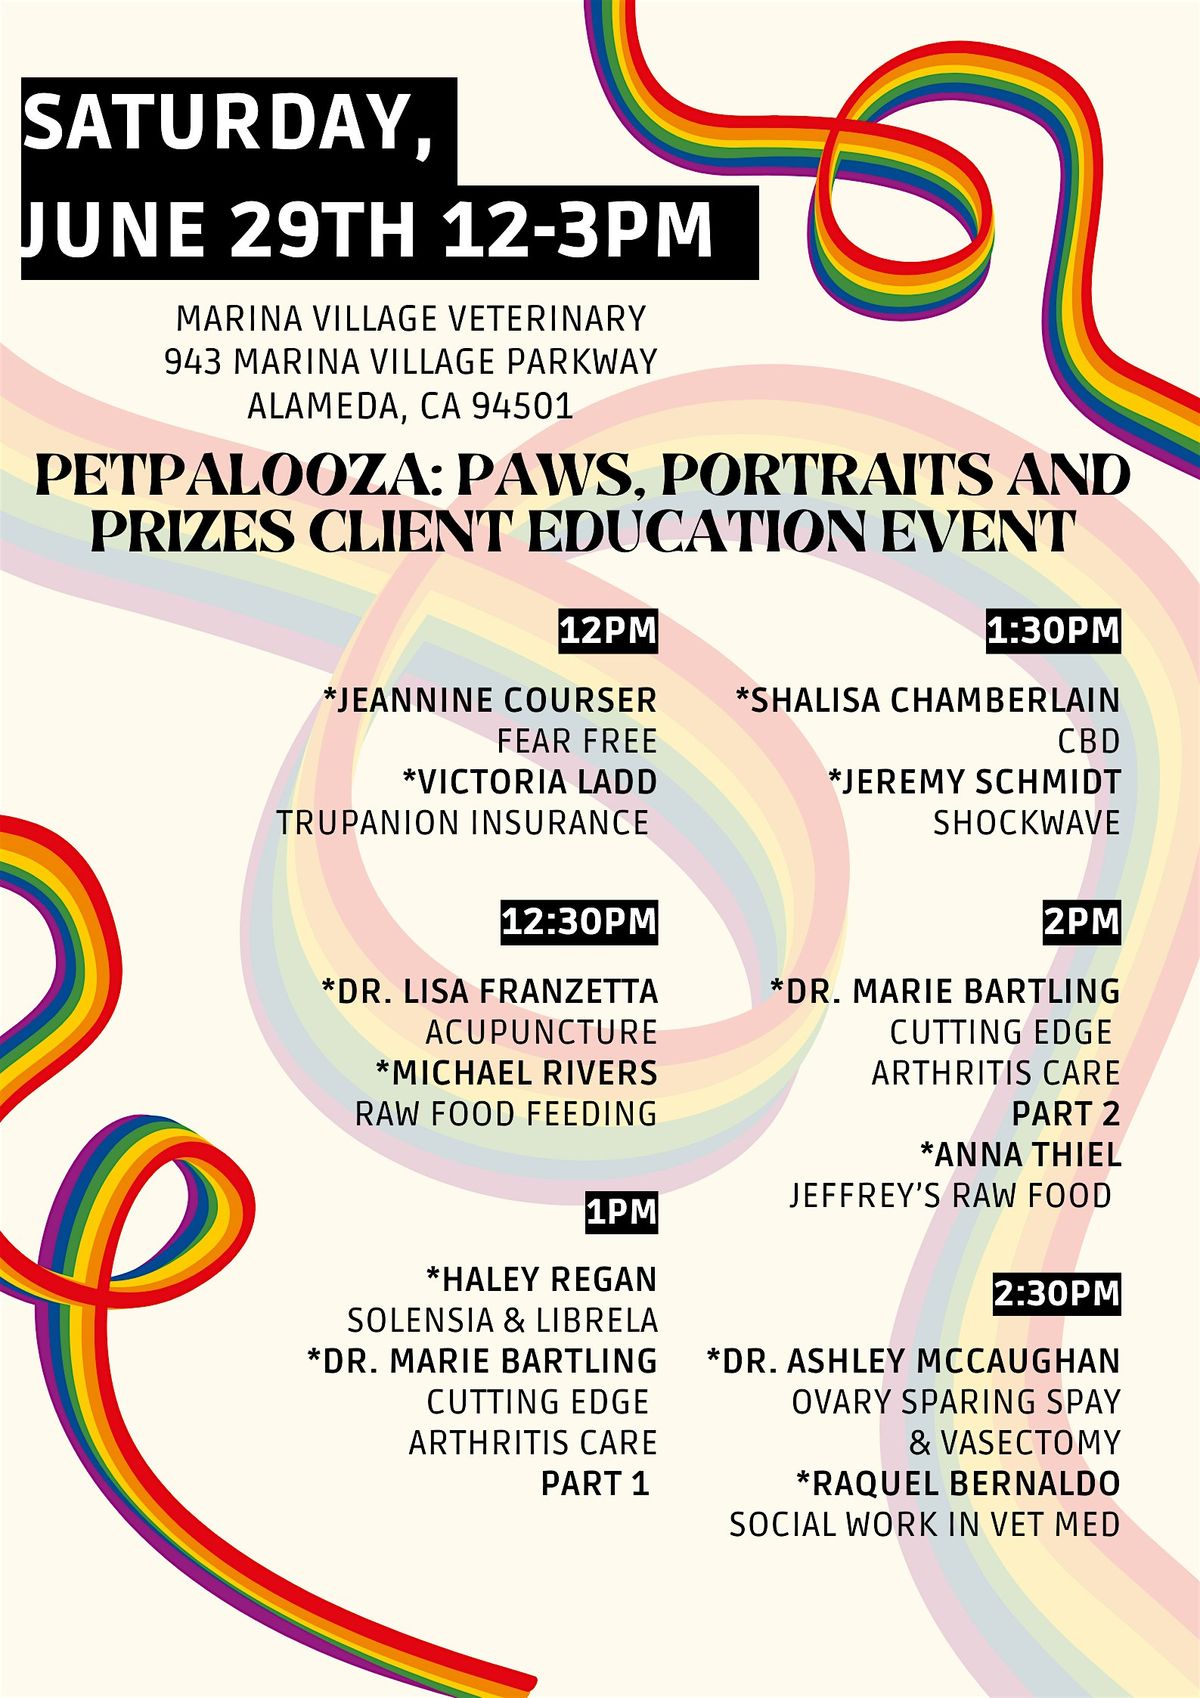 PetPalooza: Paws, Portraits & Prizes Client Education Event